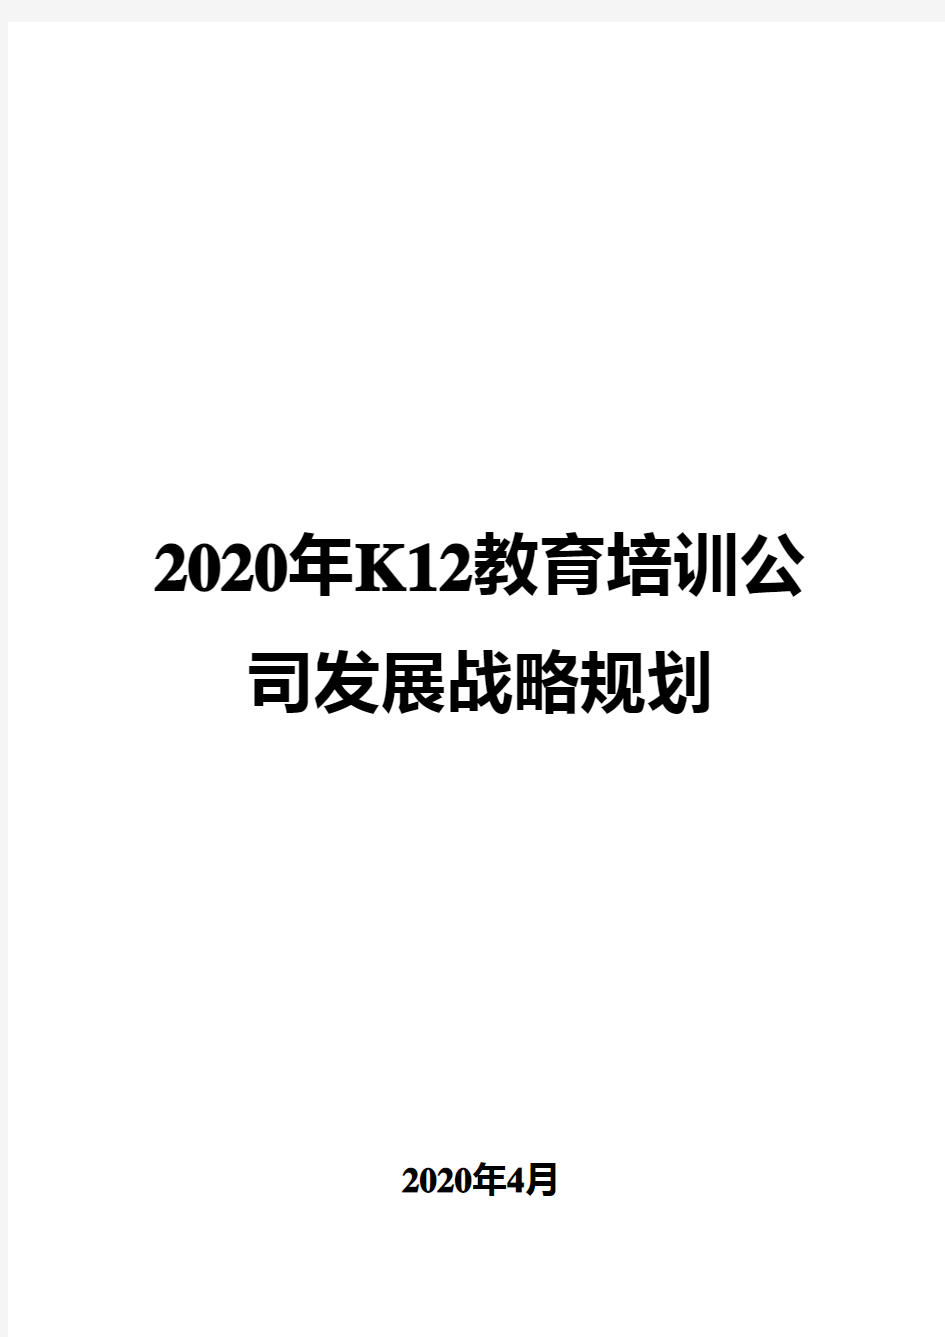 2020年K12教育培训公司发展战略规划